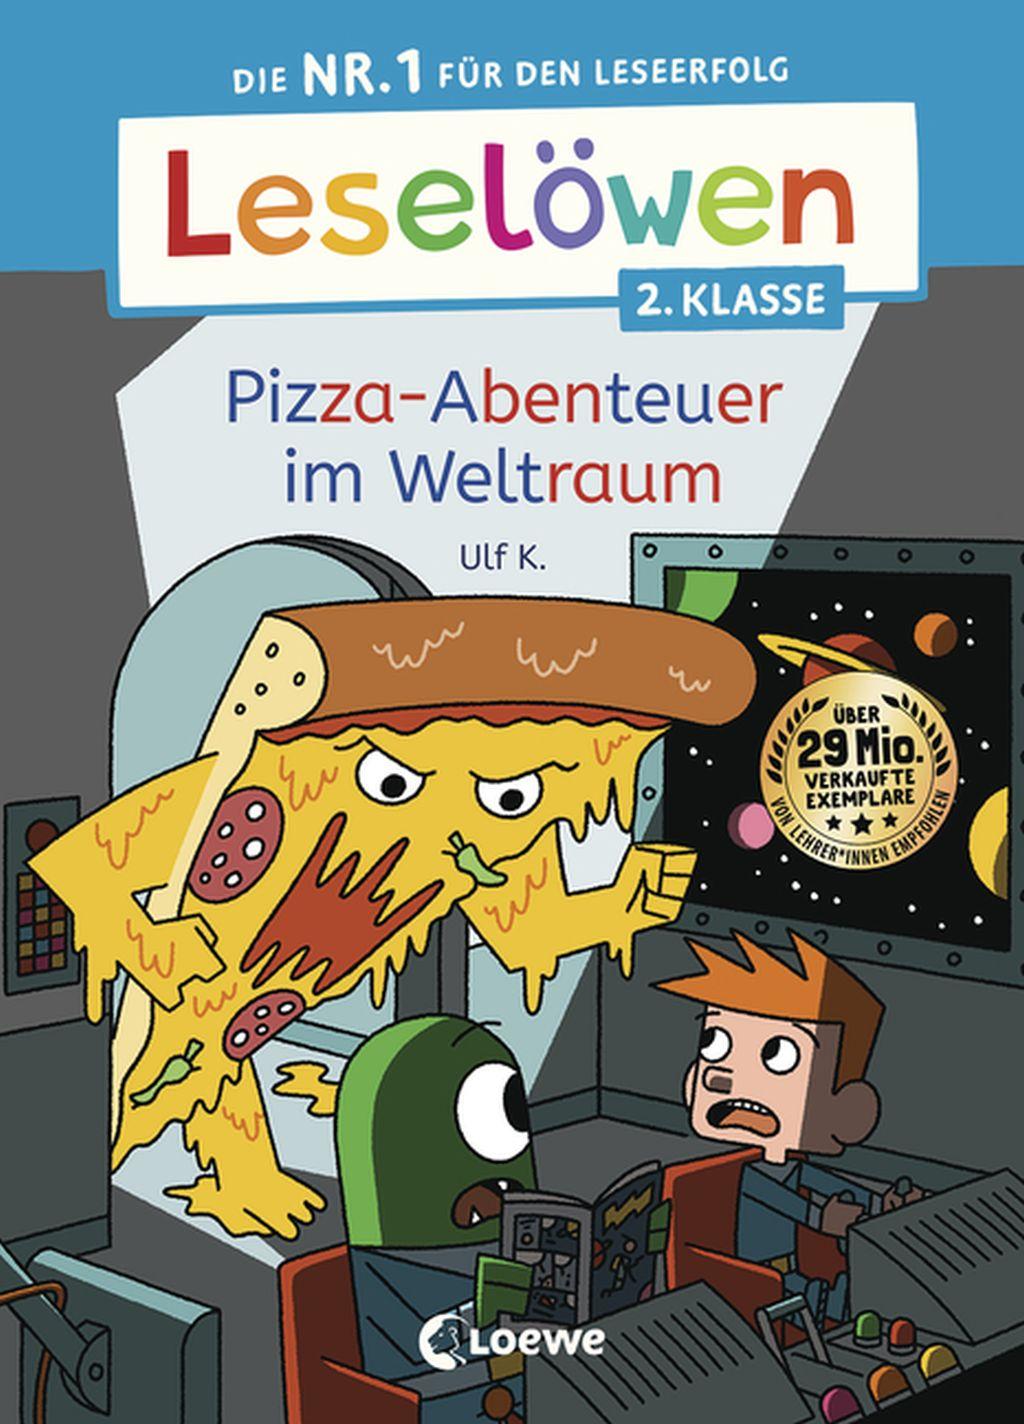 Pizza-Abenteuer im Weltraum